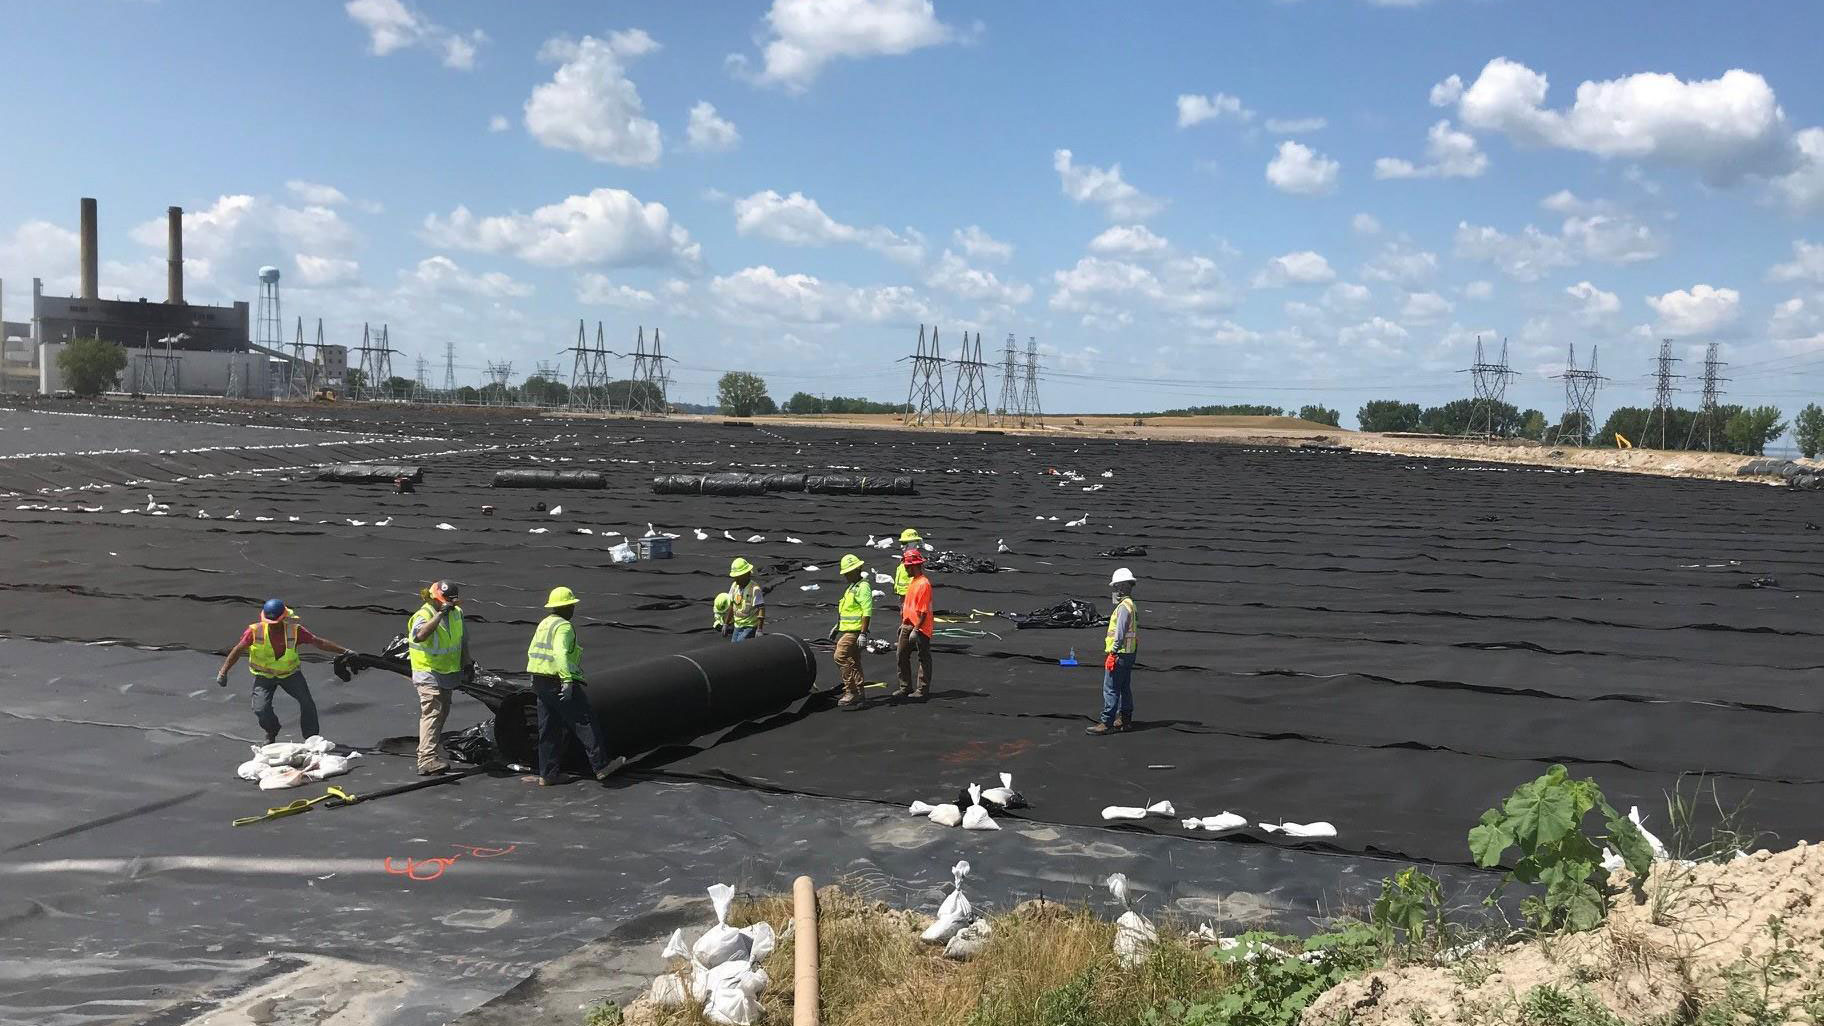 Une équipe responsable de l’étanchéité installe un géotextile sur une géomembrane précédemment installée sur une grande obturation de cendres de charbon dans une centrale électrique